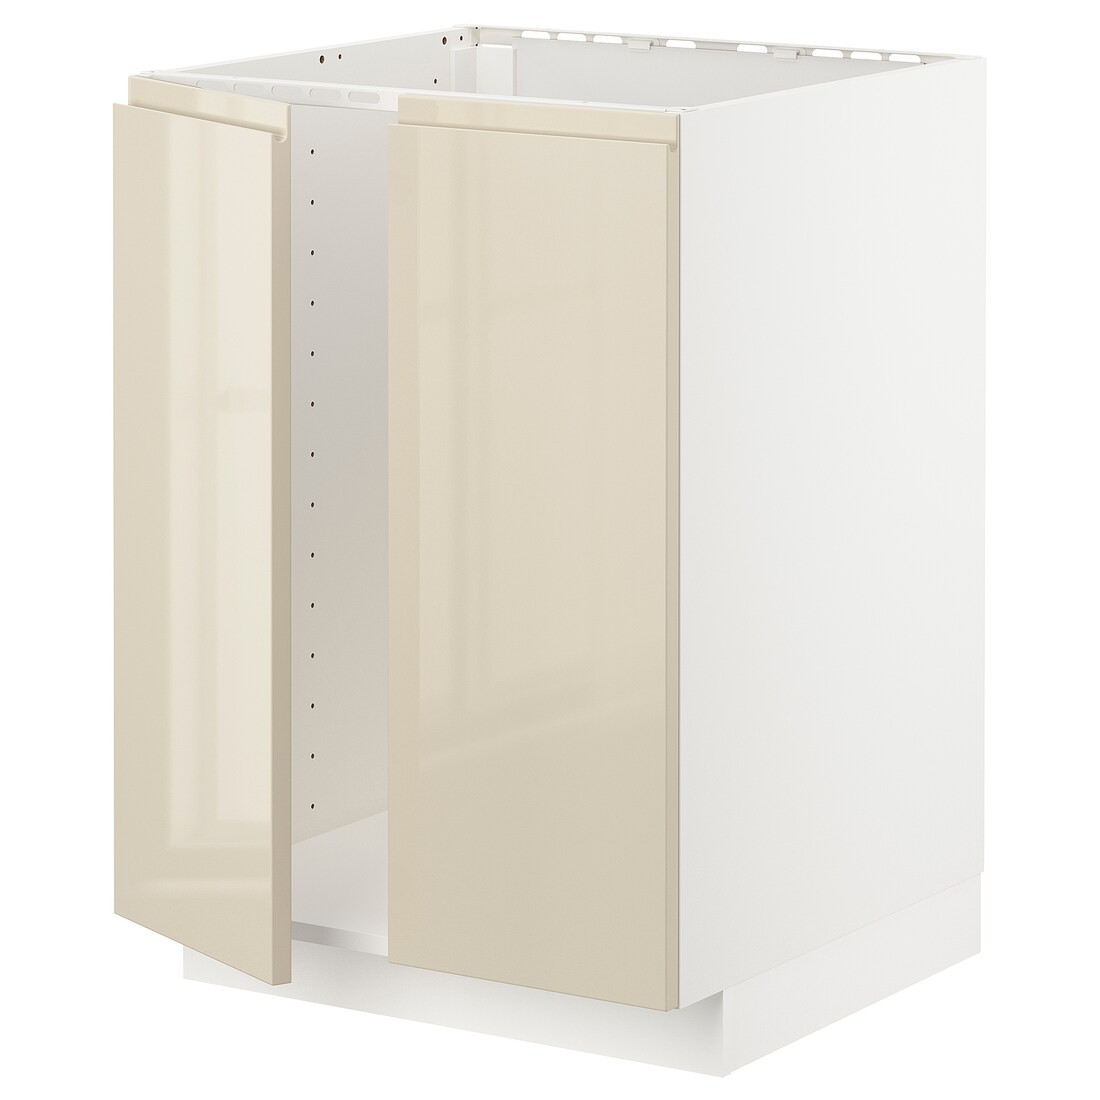 IKEA METOD МЕТОД Підлогова шафа для мийки, білий / Voxtorp глянцевий світло-бежевий, 60x60 см 89465901 894.659.01